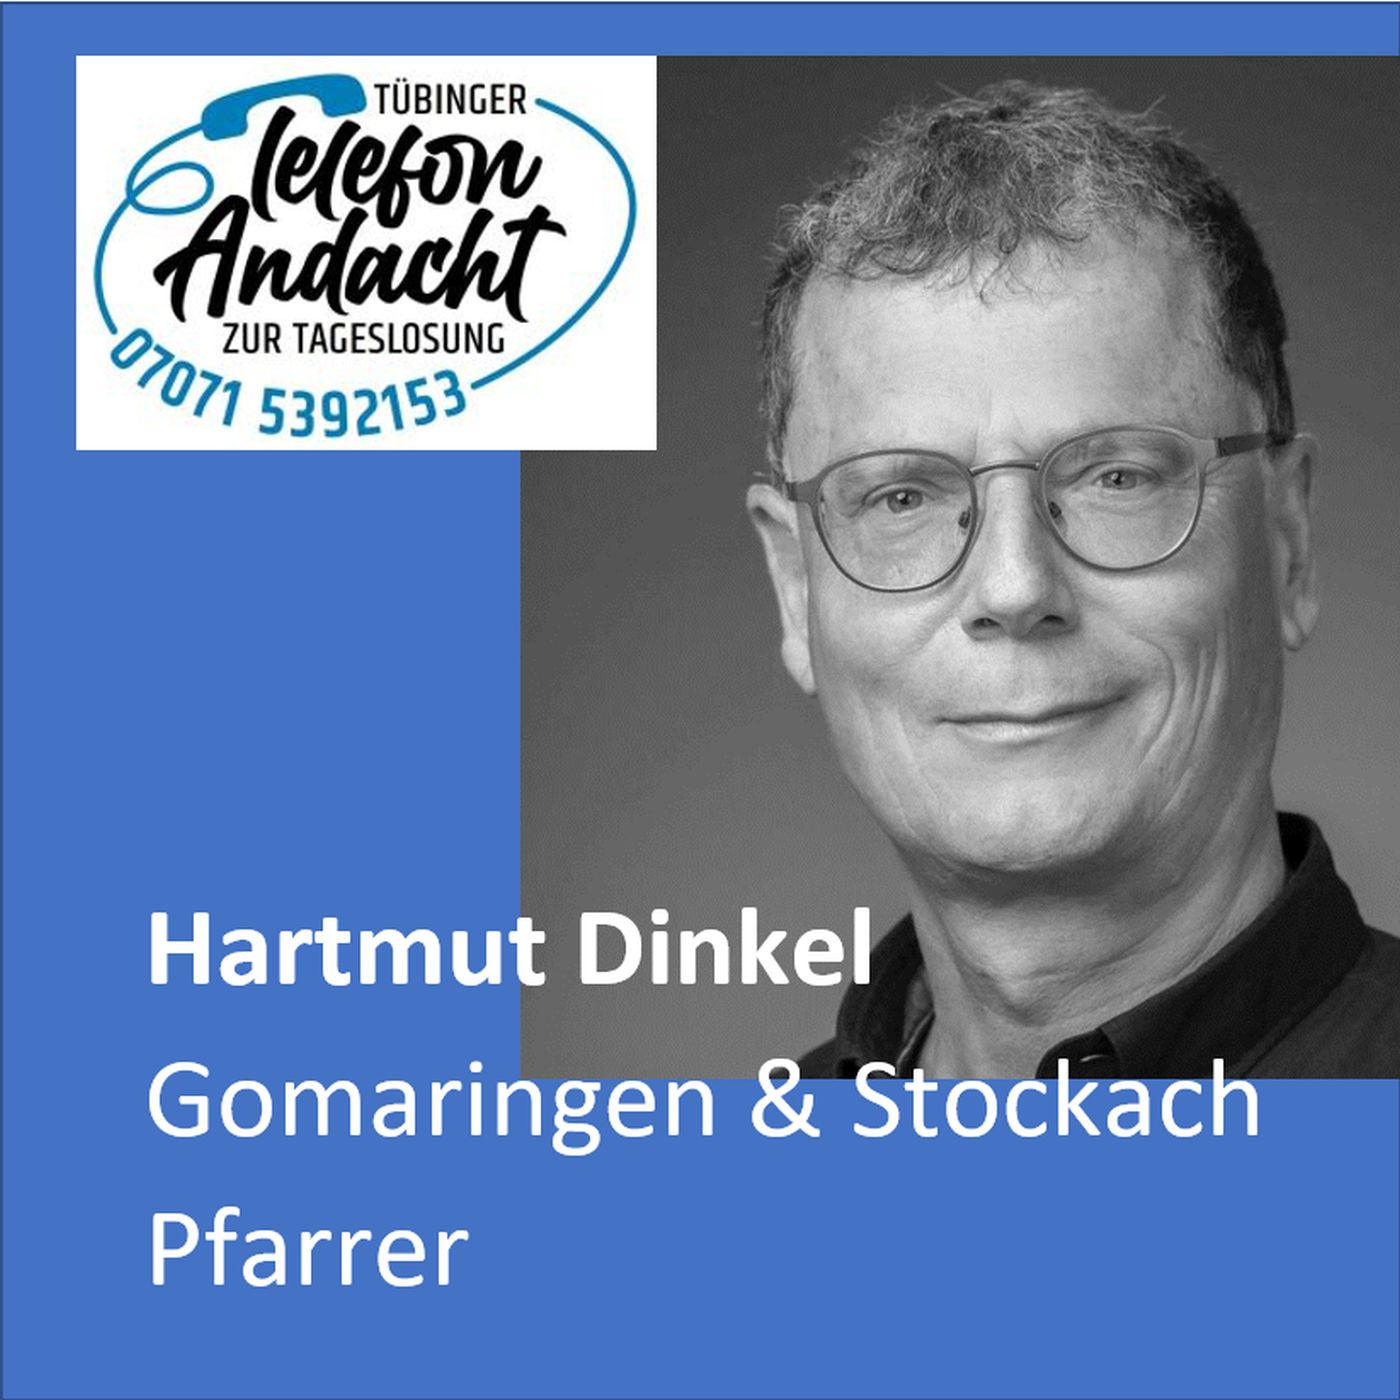 23 05 17 Hartmut Dinkel